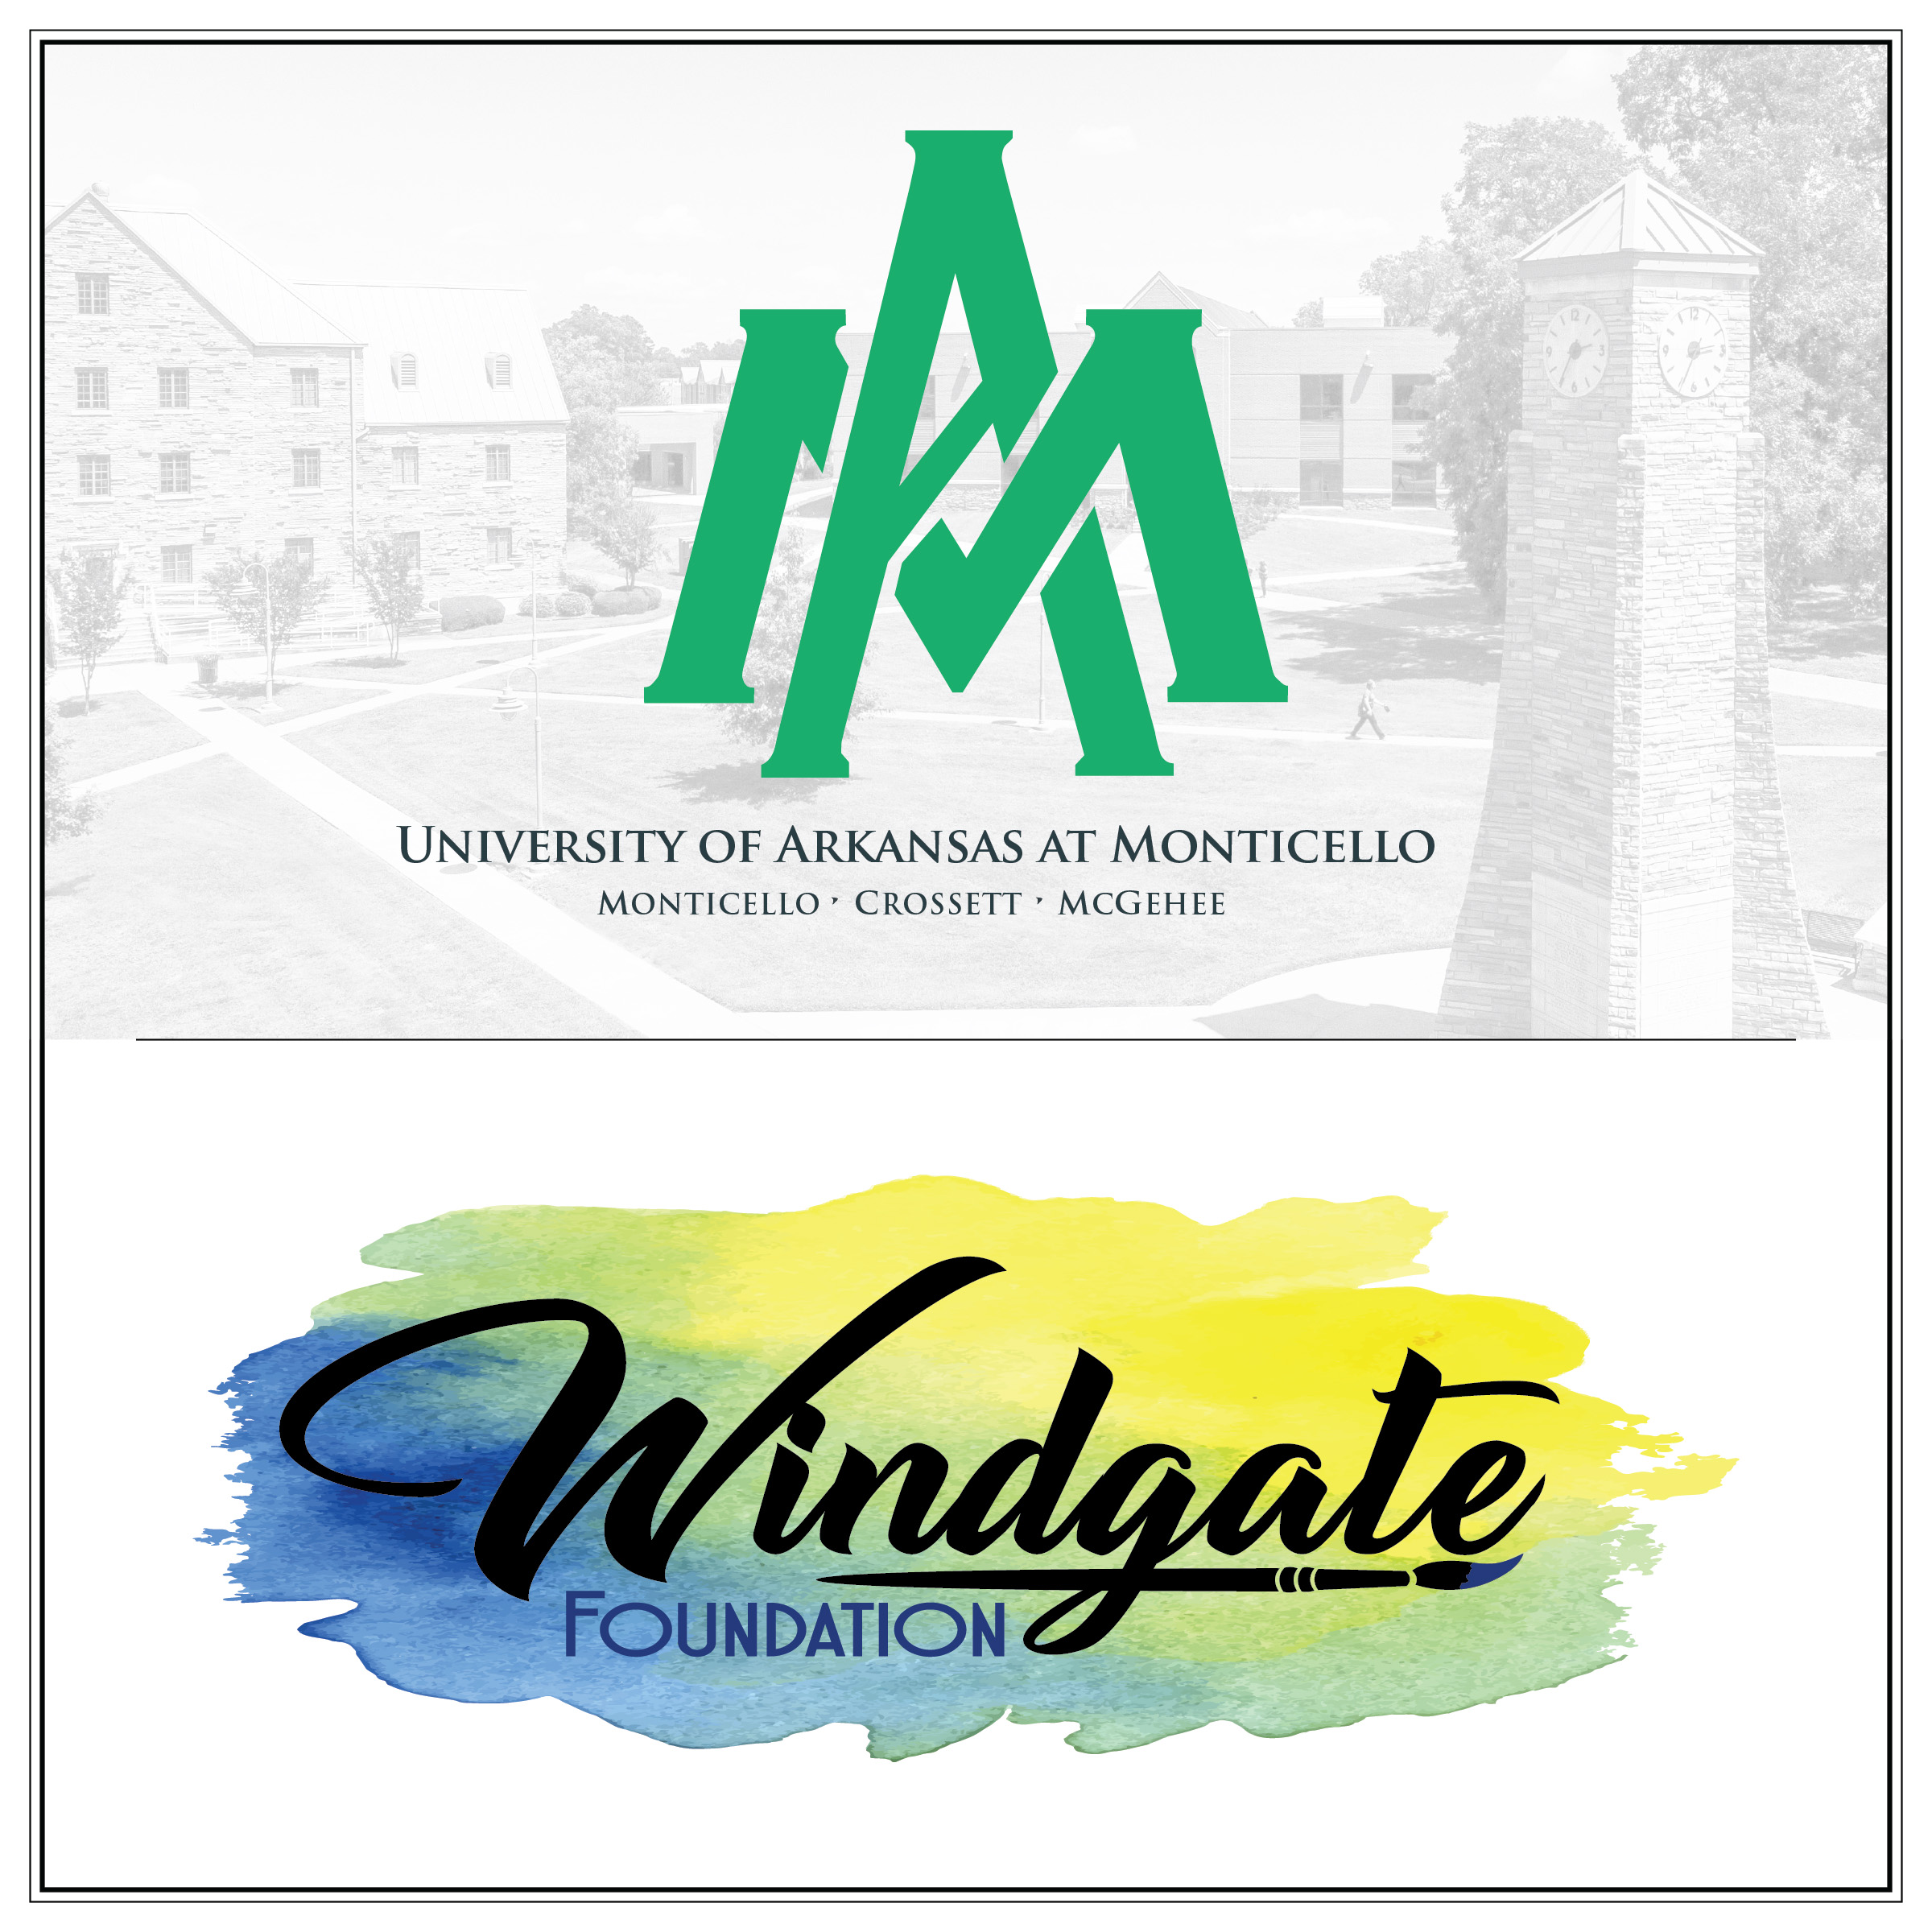 UAM-Windgate Foundation